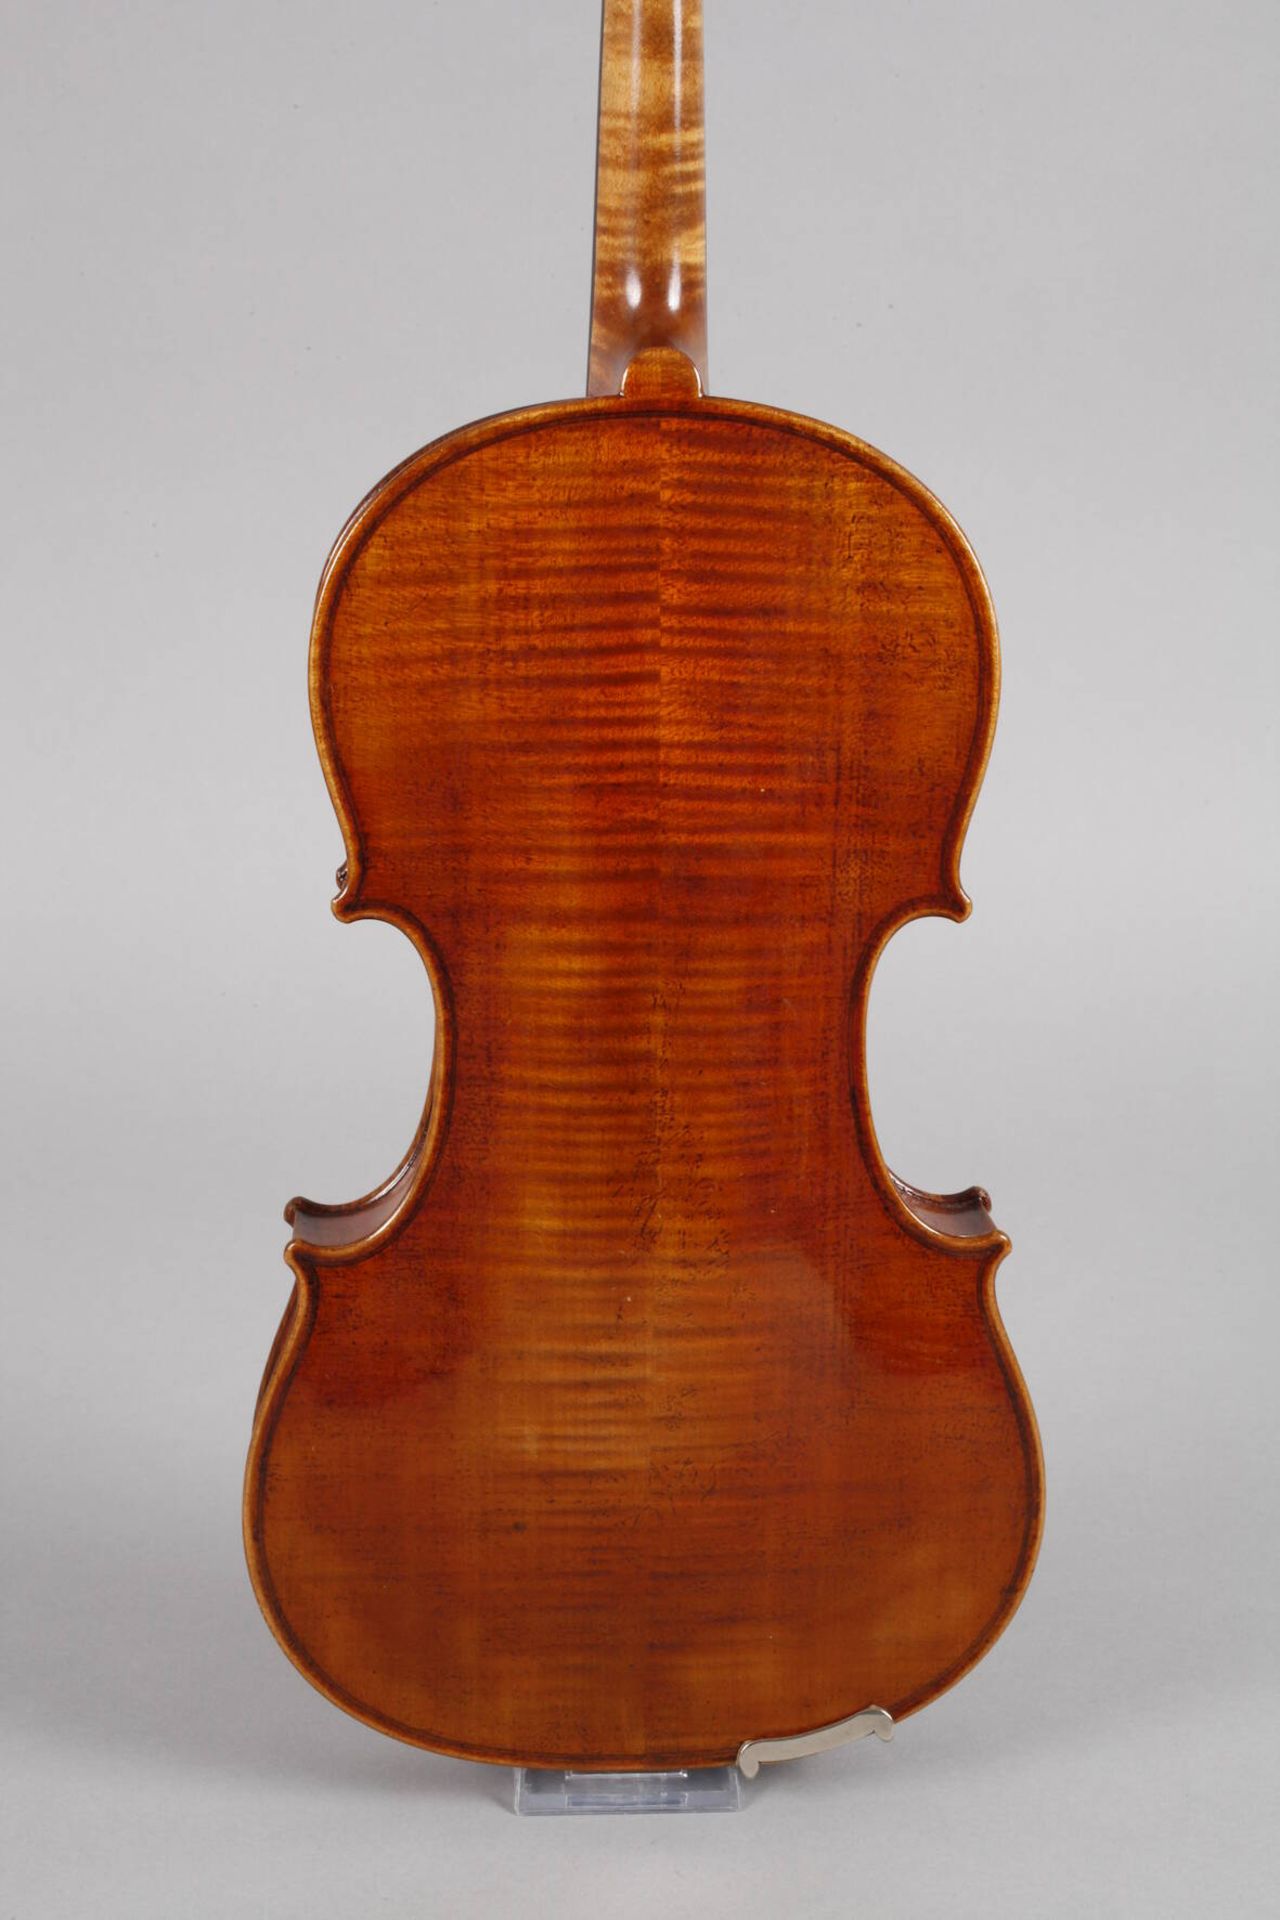 Violine1930er Jahre, ohne Klebezettel, geteilter, gleichmäßig geflammter Boden im gelblichen Lack, - Bild 3 aus 6